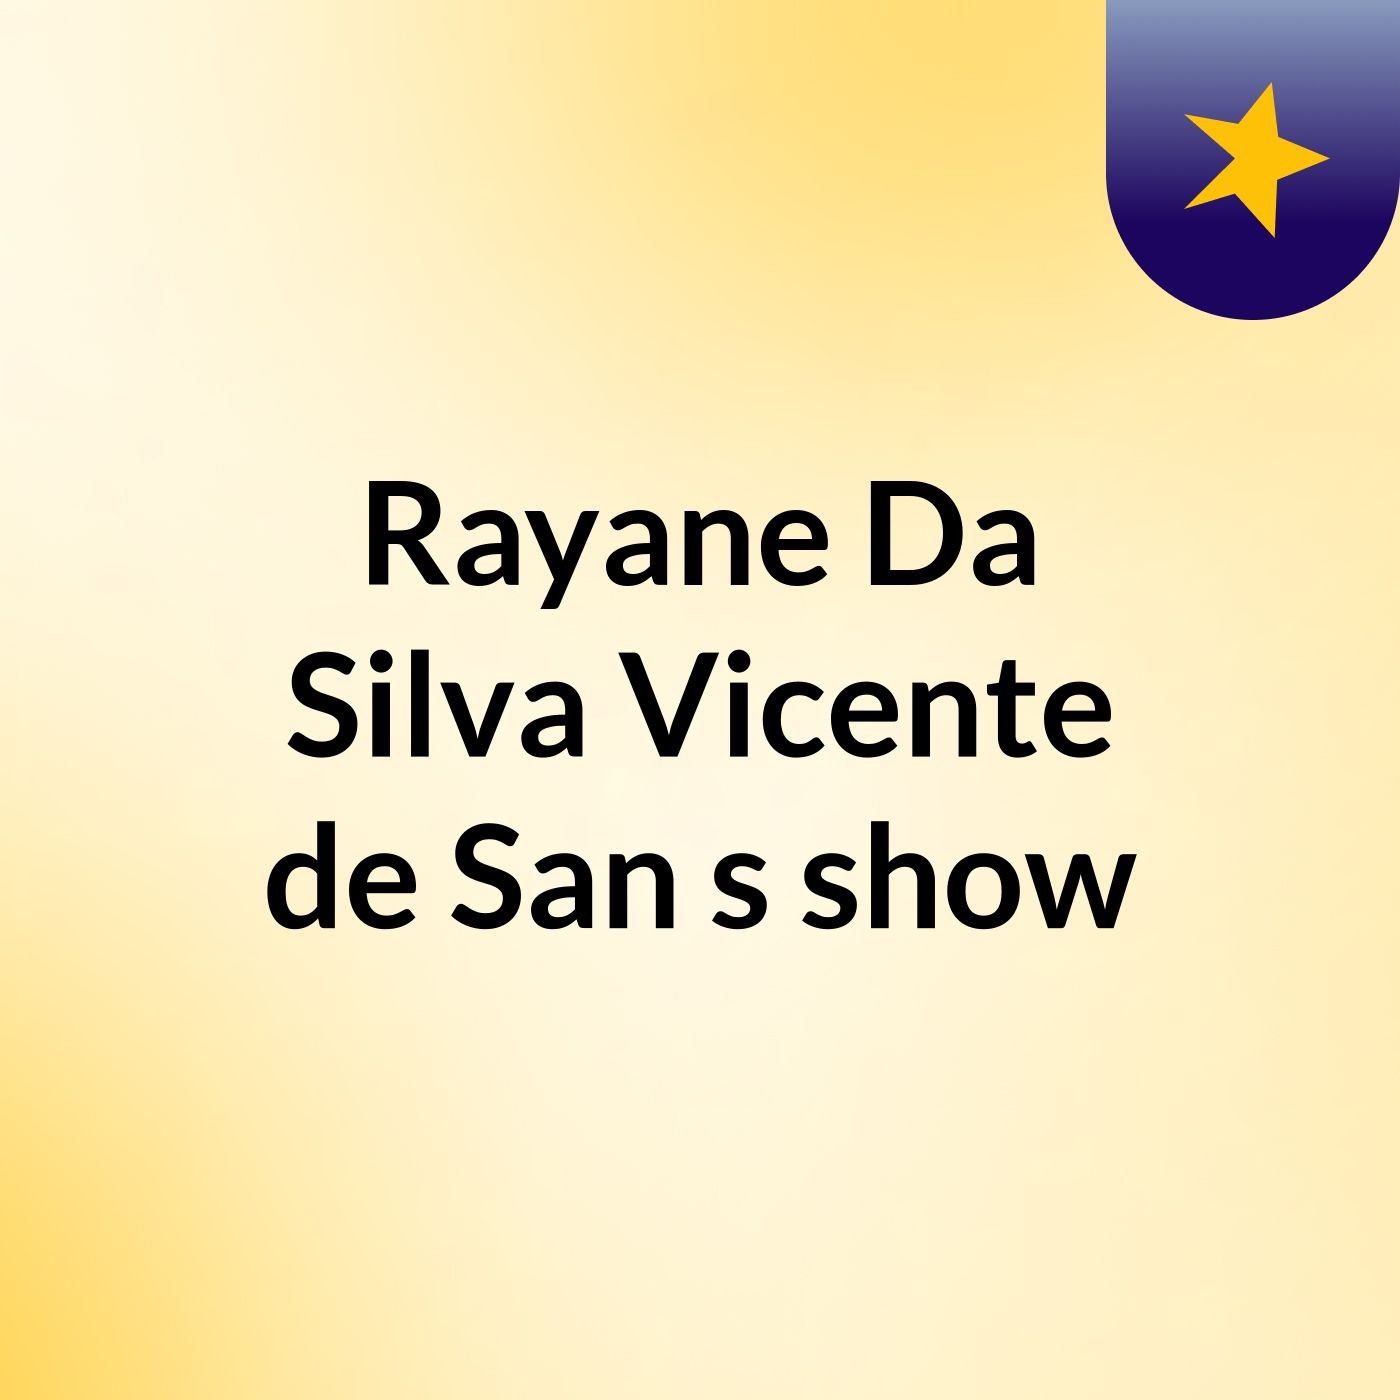 Rayane Da Silva Vicente de San's show